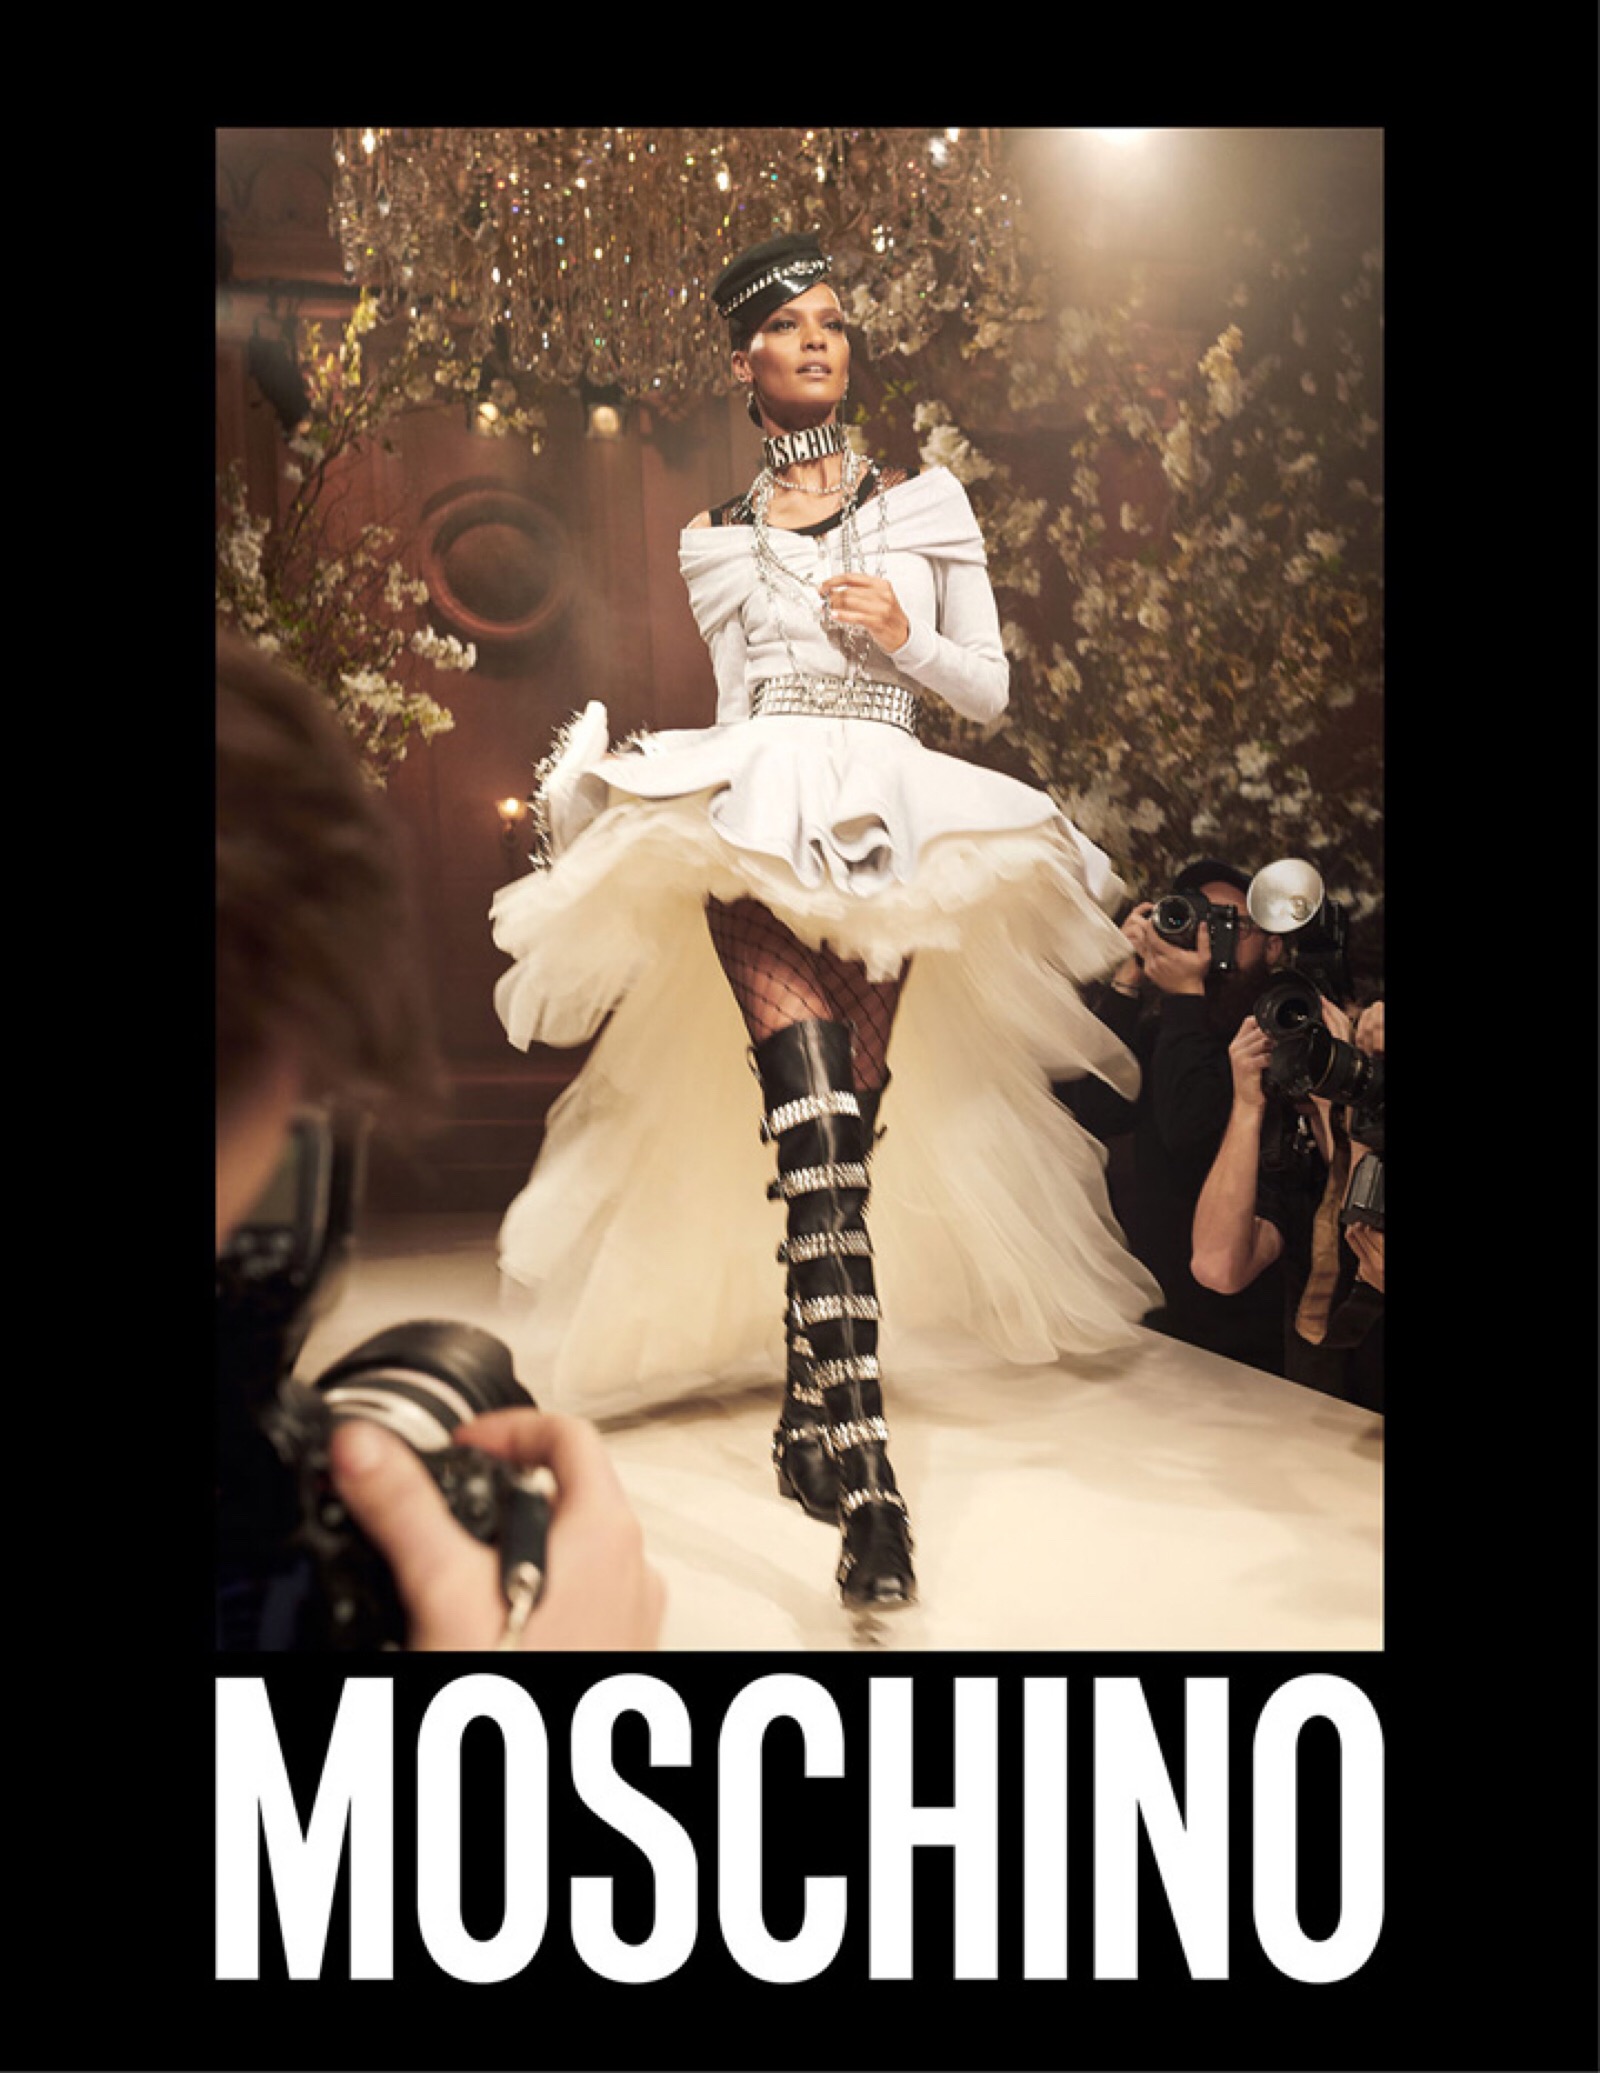 moschino(莫斯其诺)释出2018春夏系列广告大片